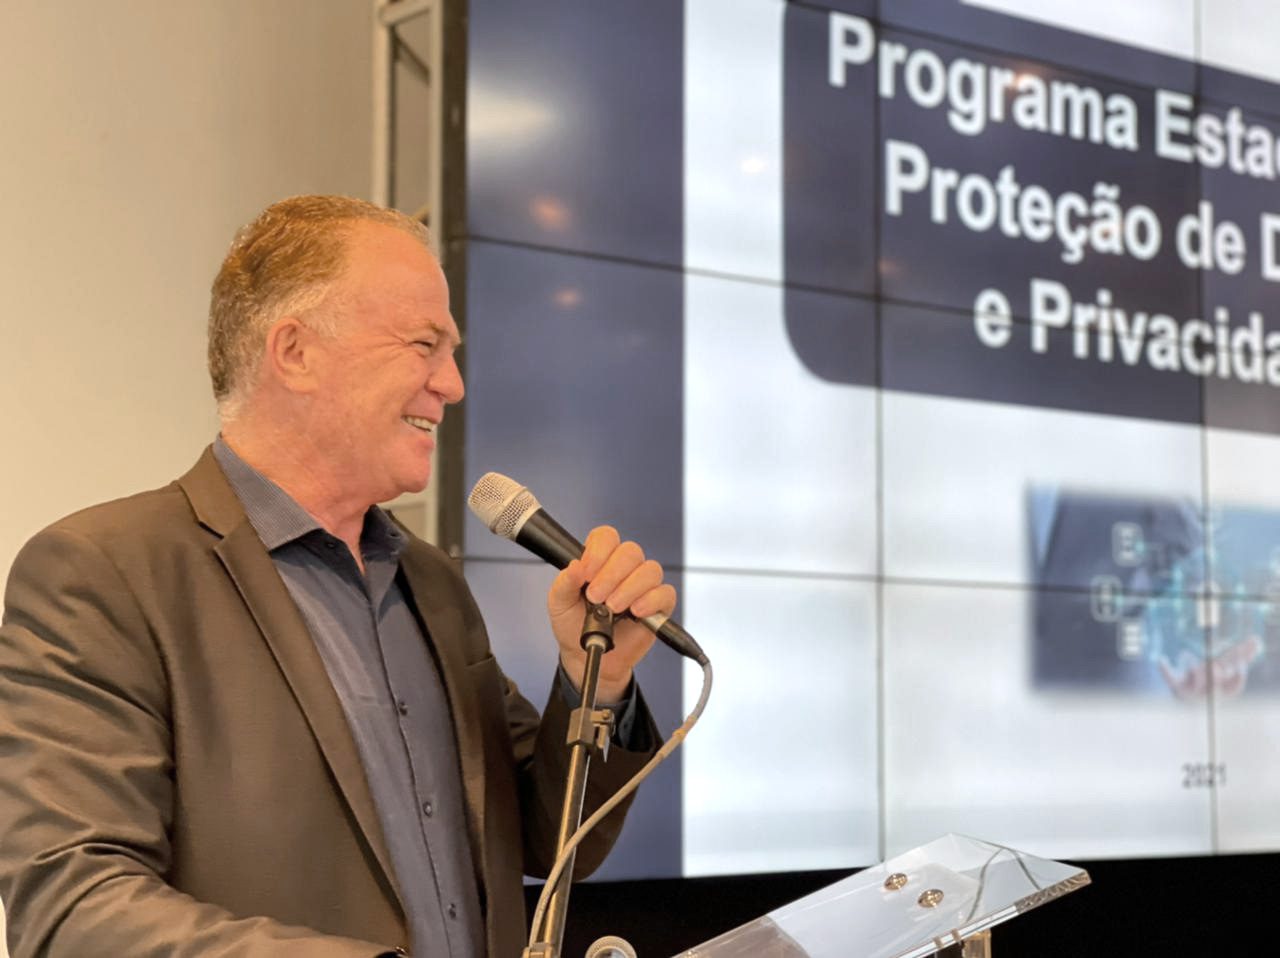 Casagrande lança Programa Estadual de Proteção de Dados e Privacidade